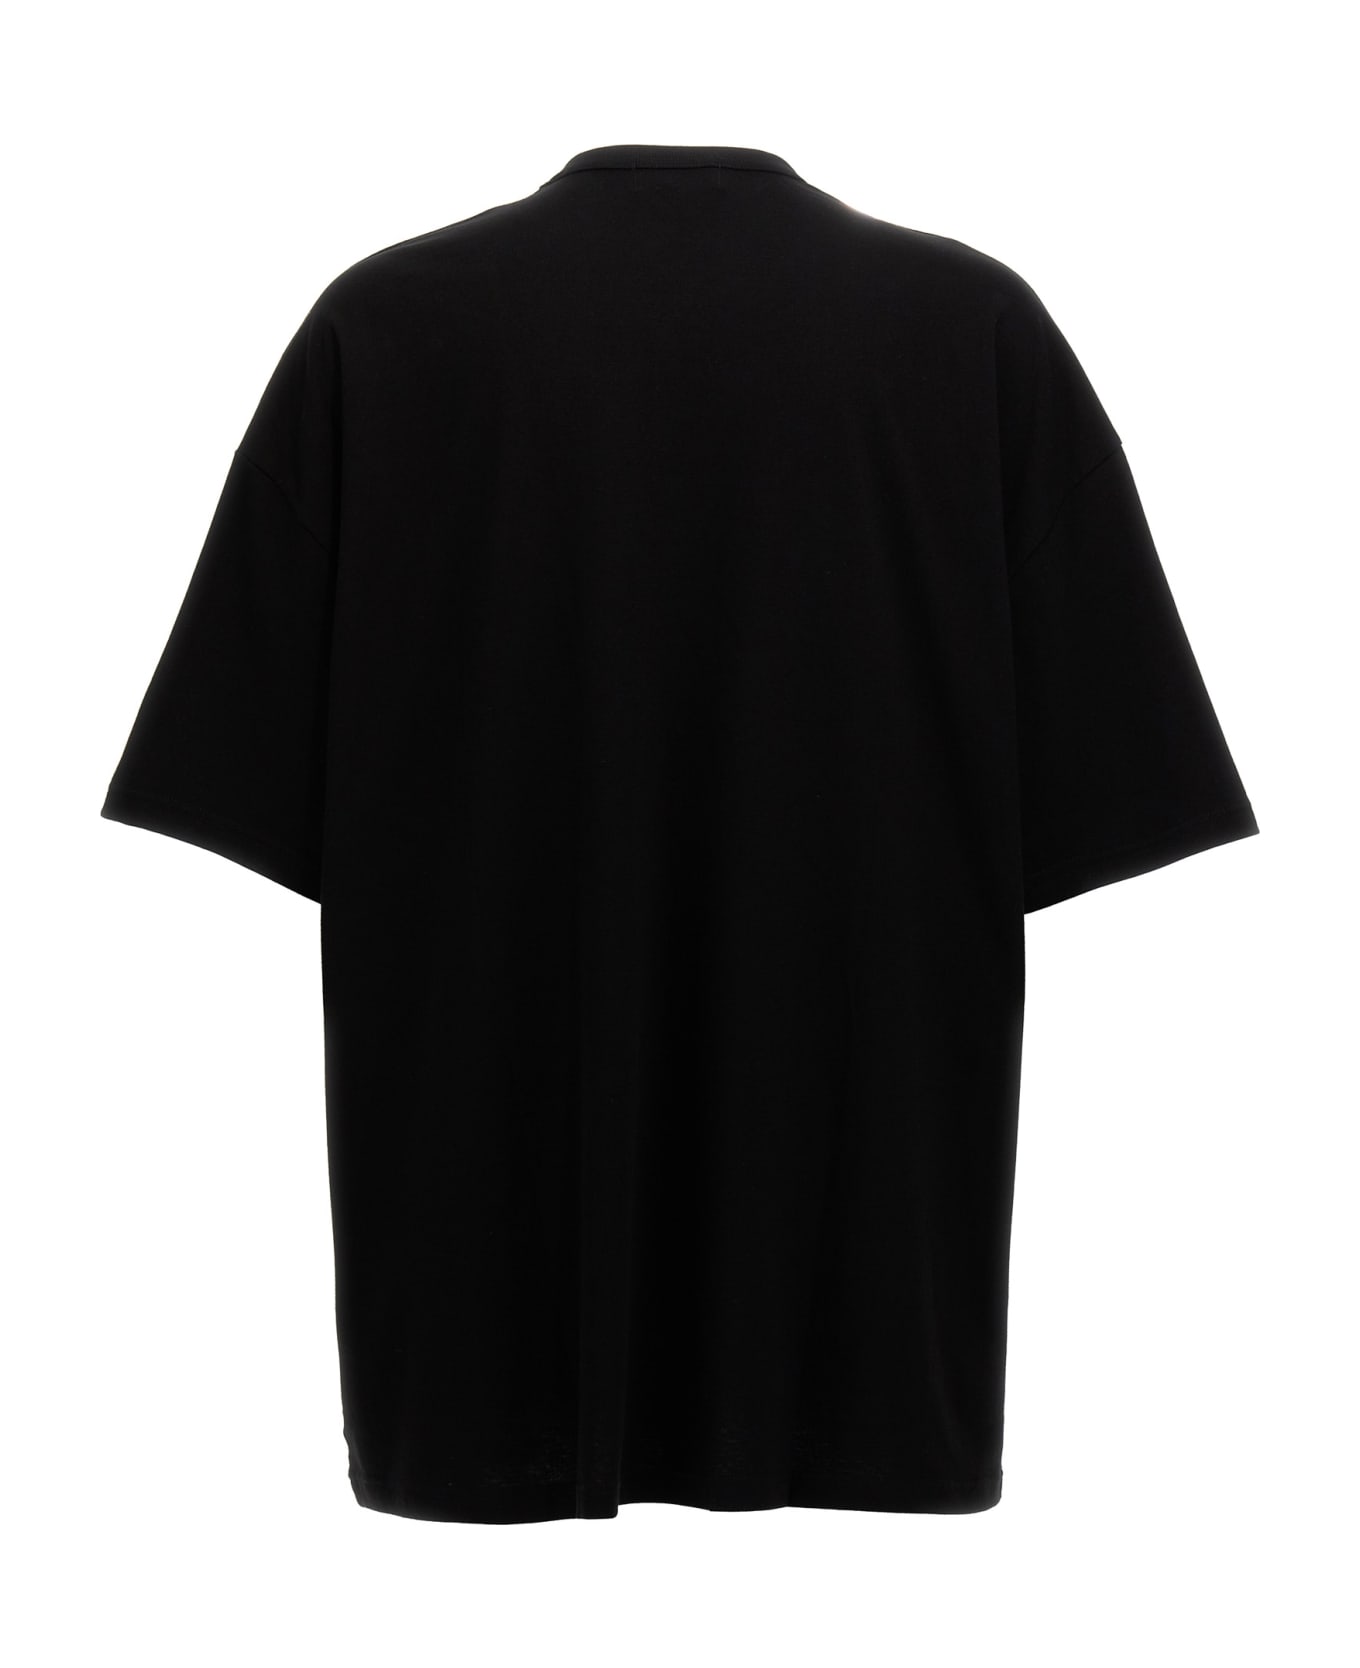 Black Comme des Garçons Comme Des Garçons Black X Nike T-shirt - Black   シャツ